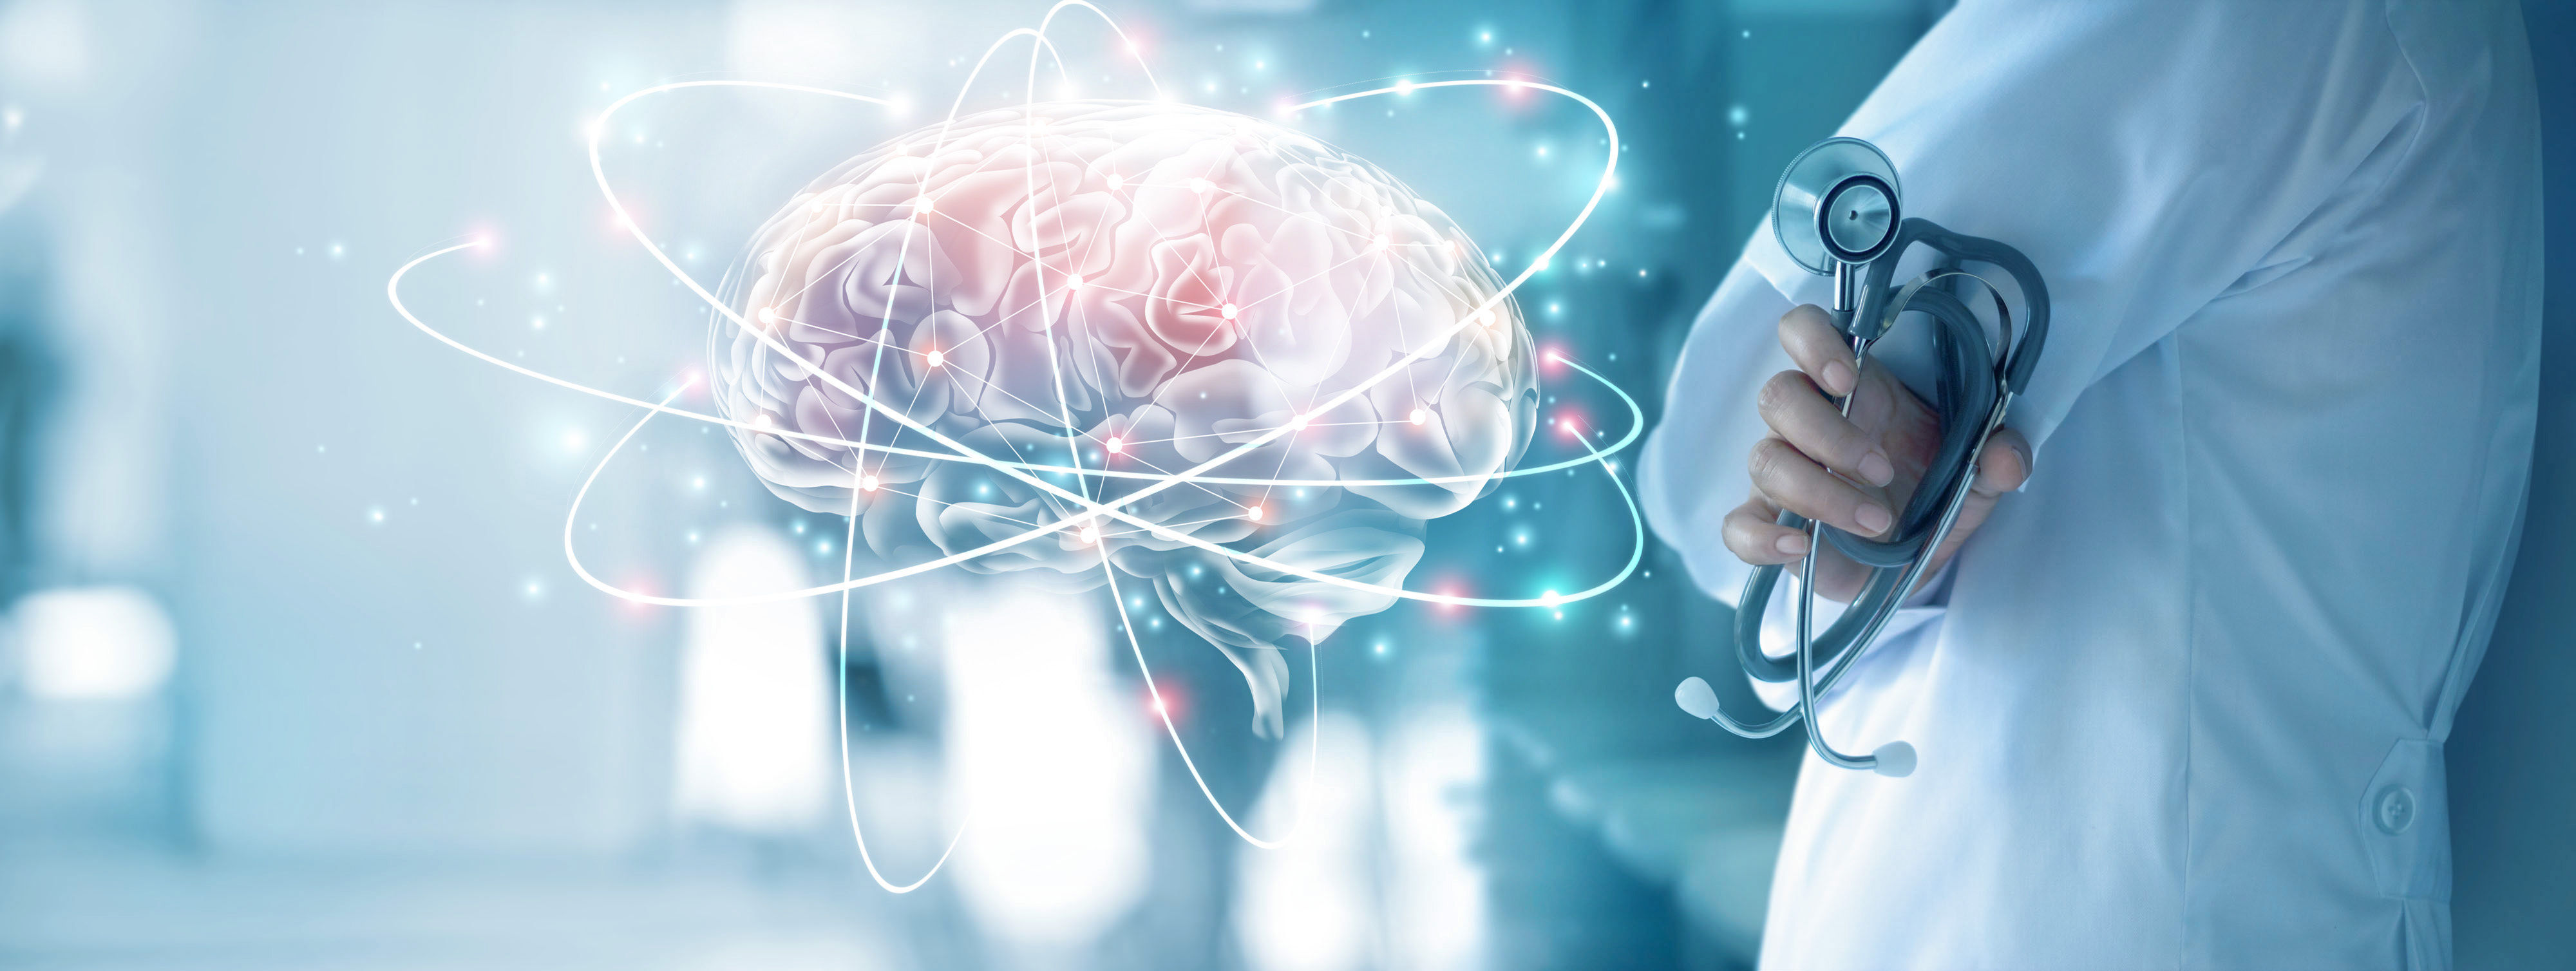 La connectivité cérébrale corrélée à l'atrophie cérébrale dans l'épilepsie (Adobe Stock 208730889)